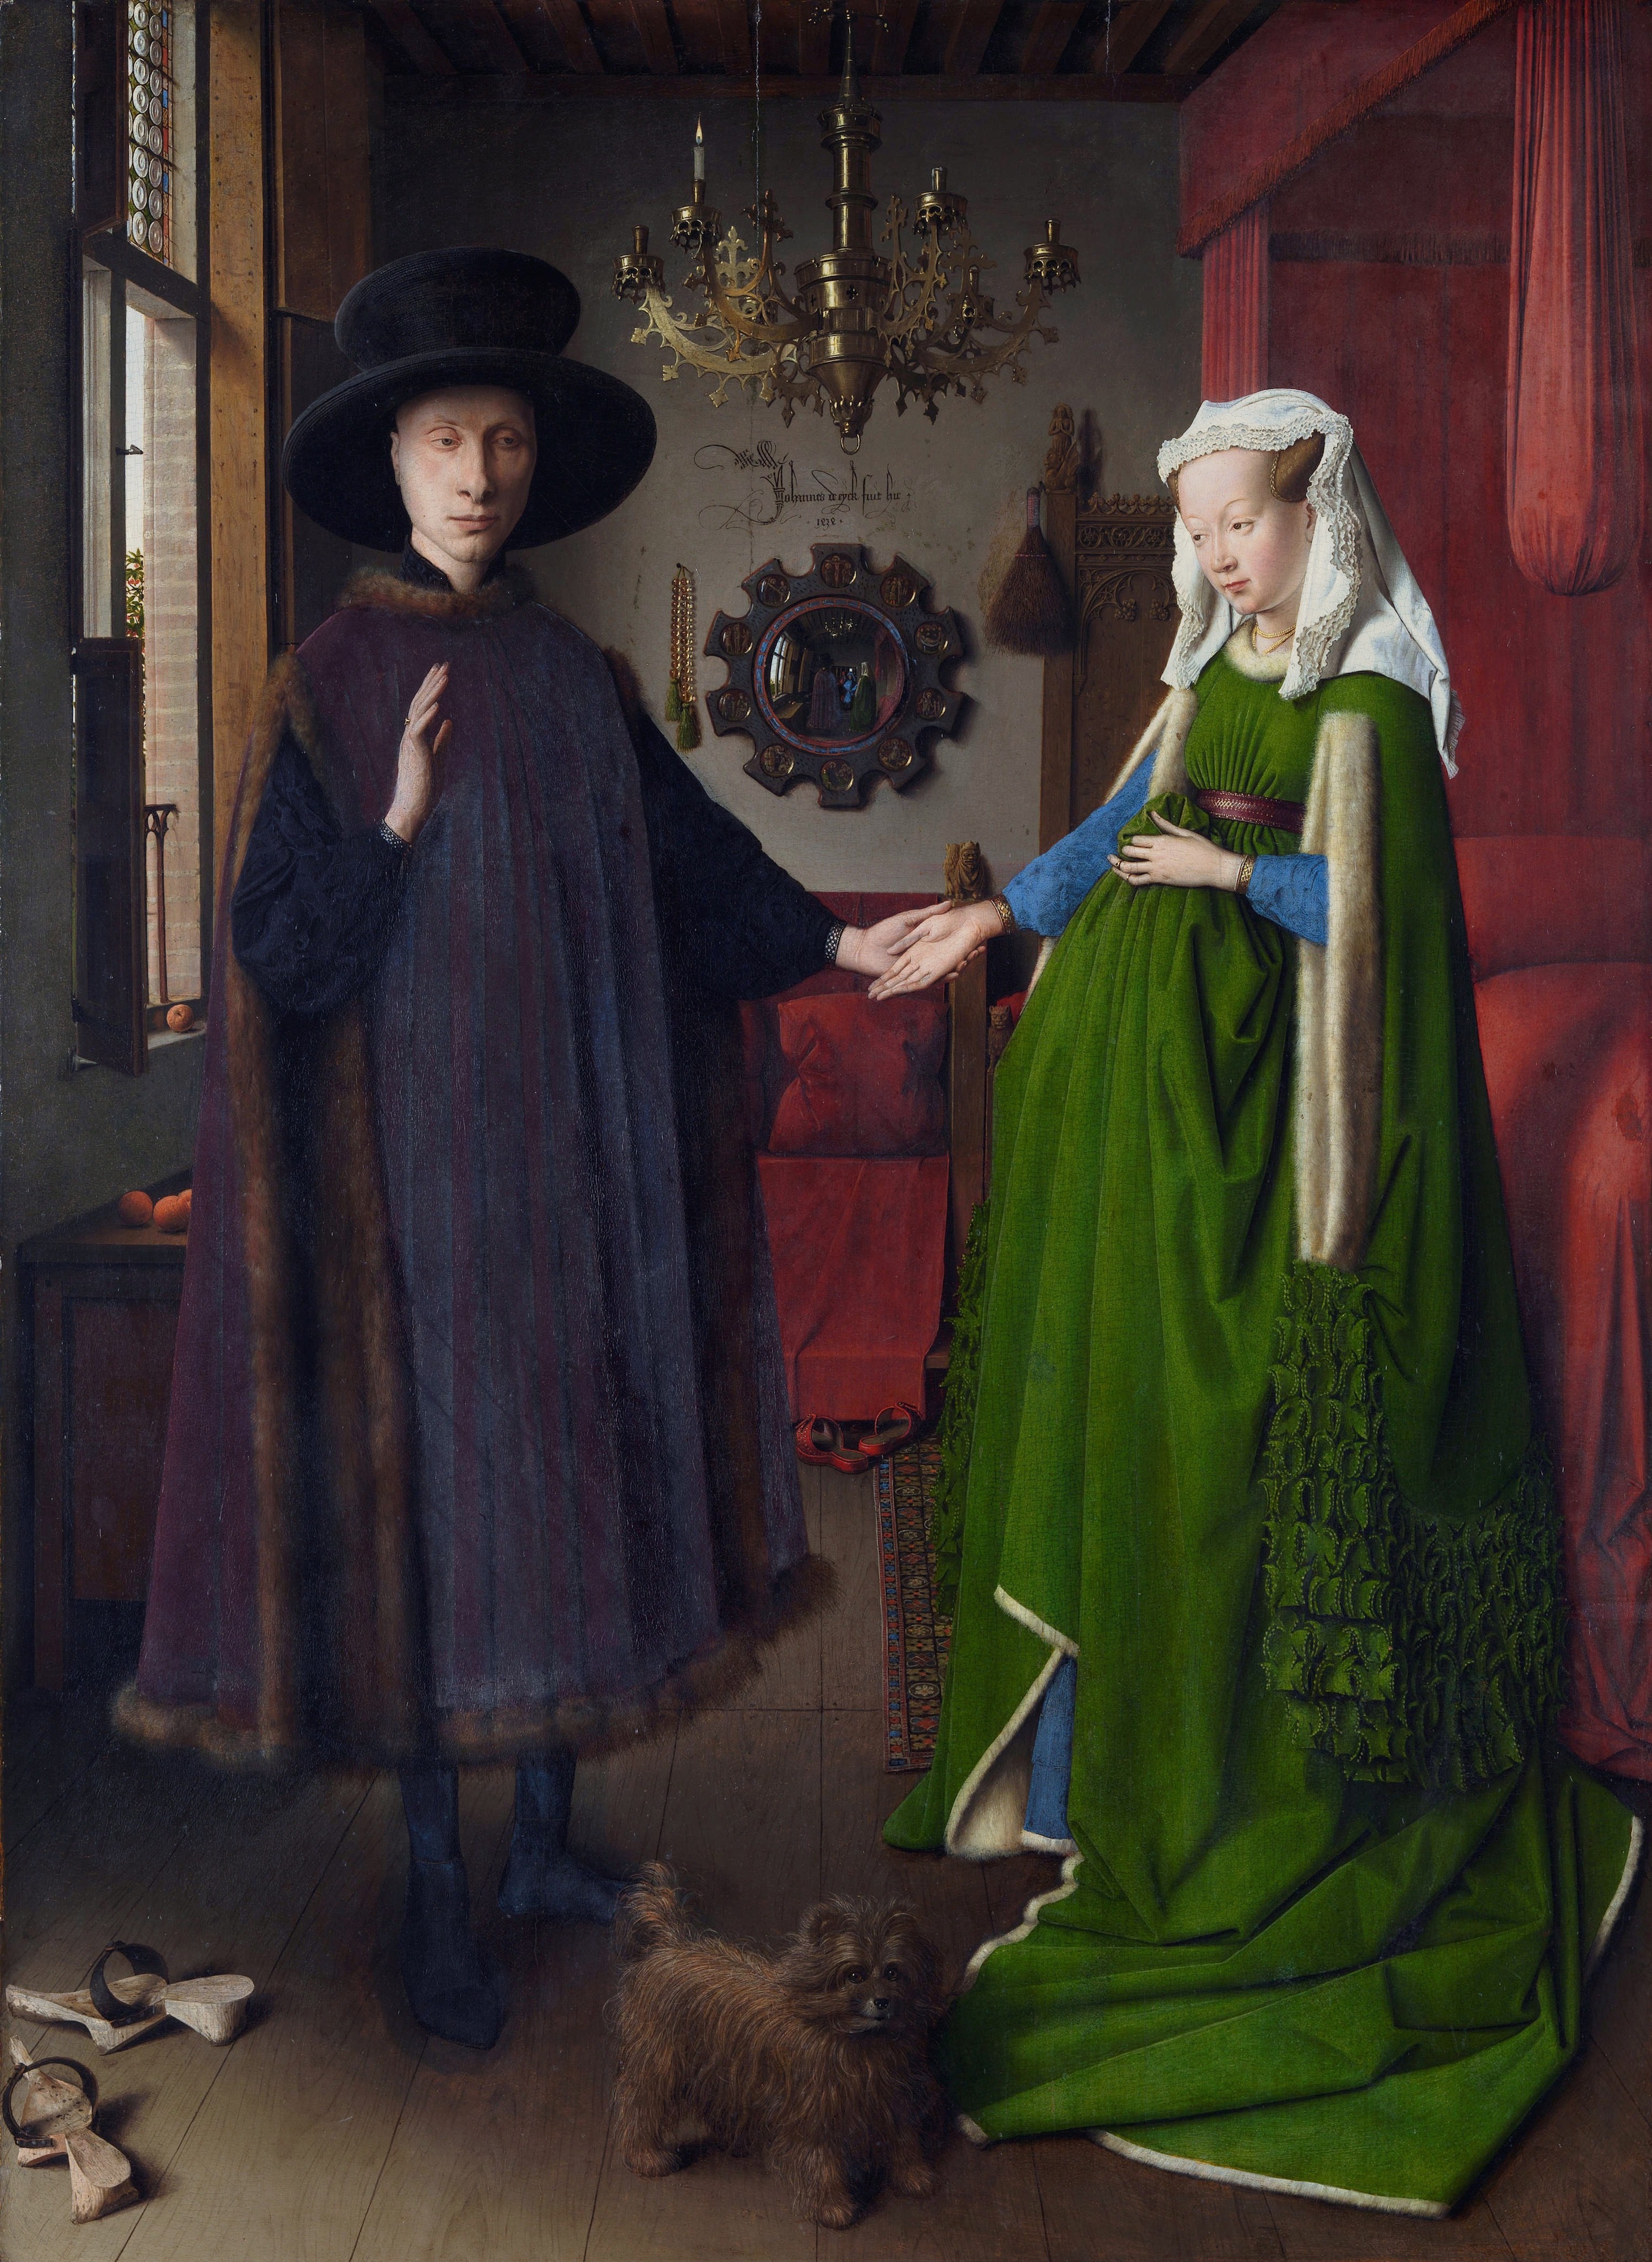 Джованни Арнольфини и его жена Джованна Сенами by Jan van Eyck - 1434 - 82 × 59.5 см 